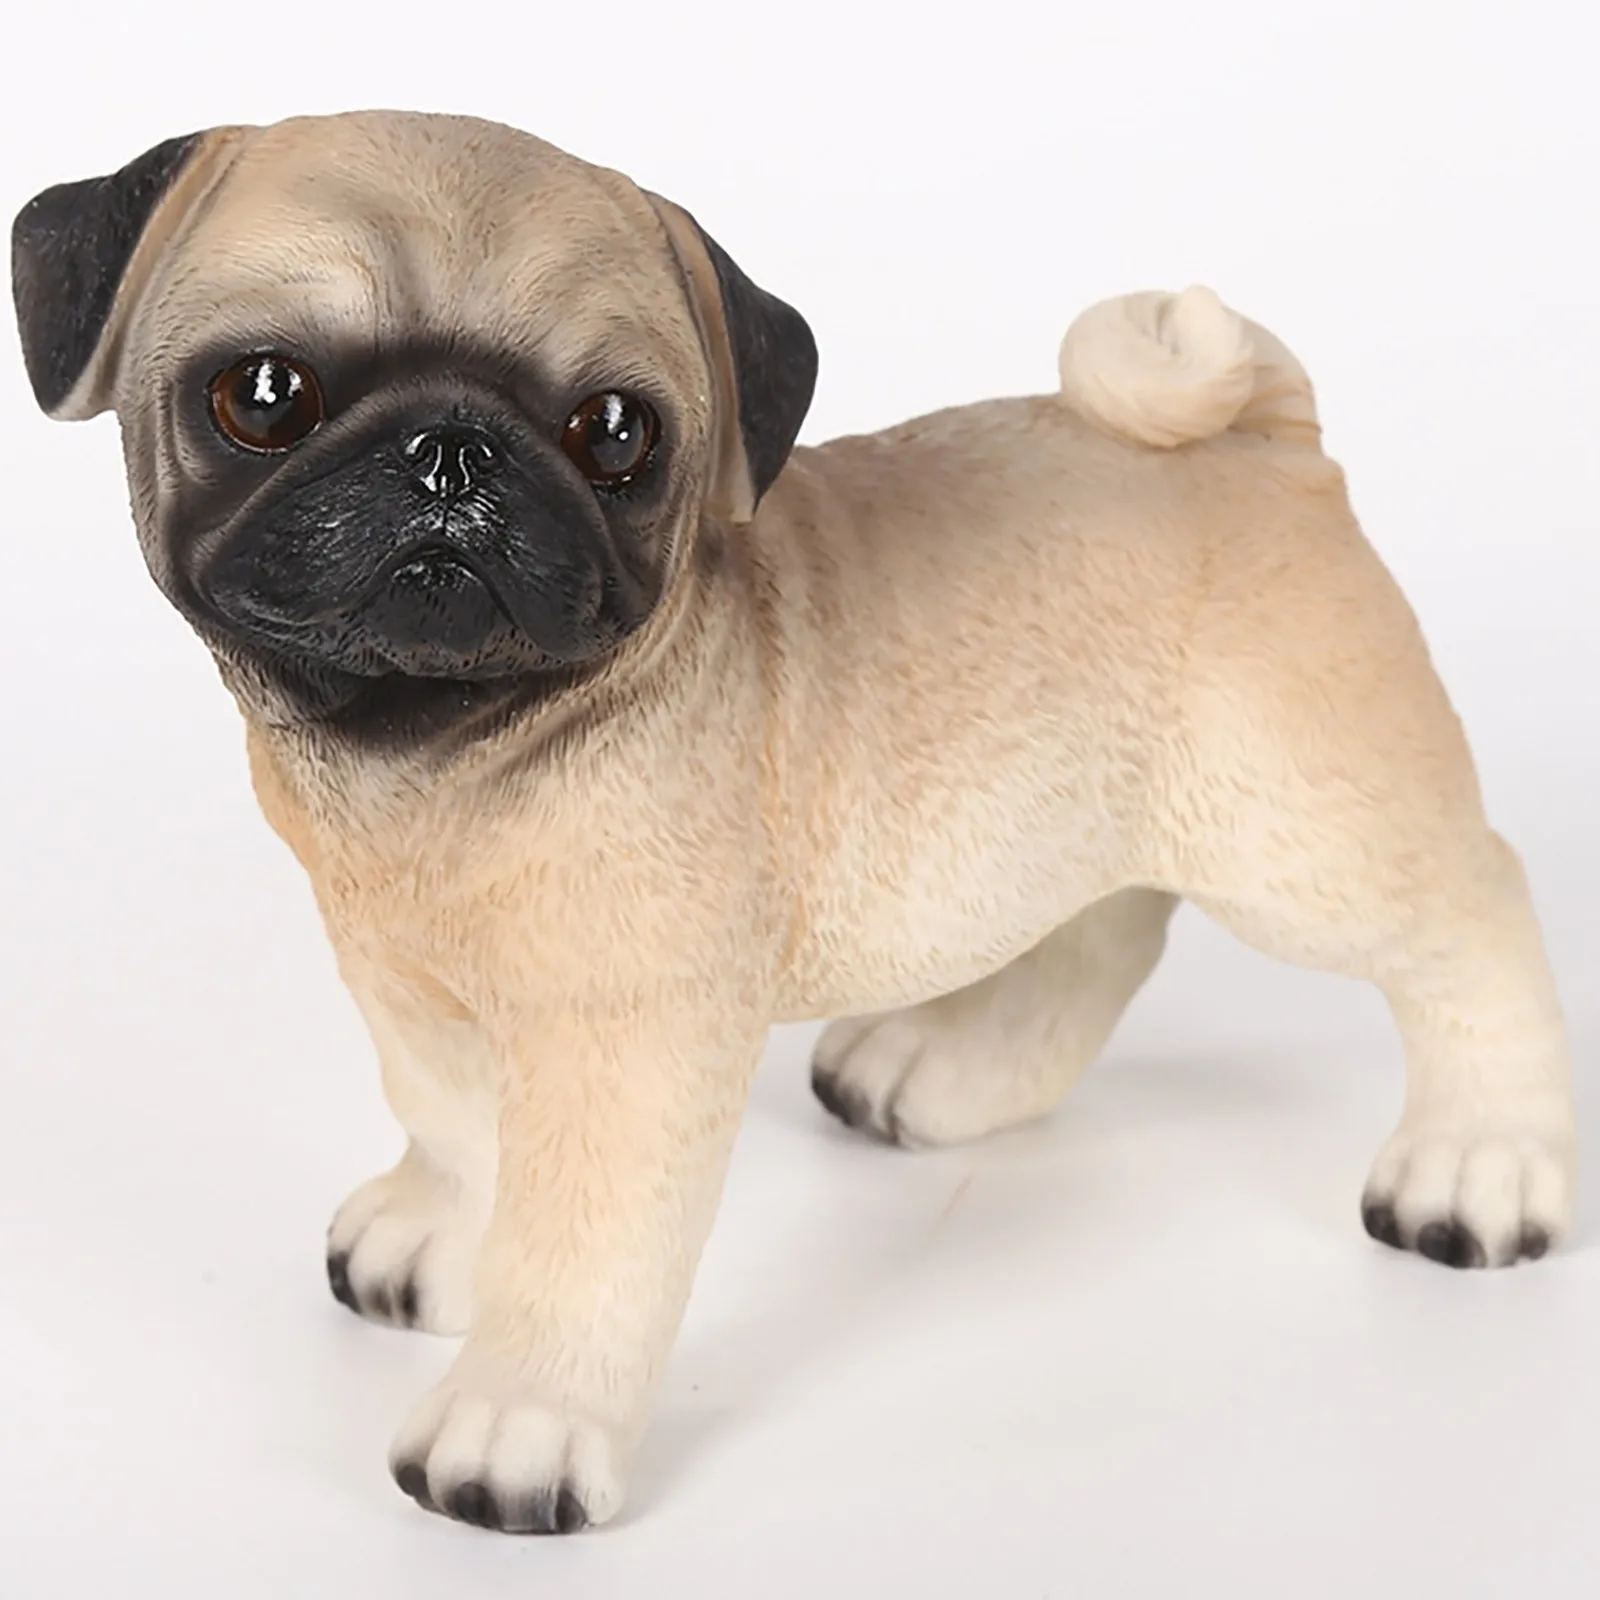 Miniature animal figurine pug dog resin vintage hand painted home decor statue 